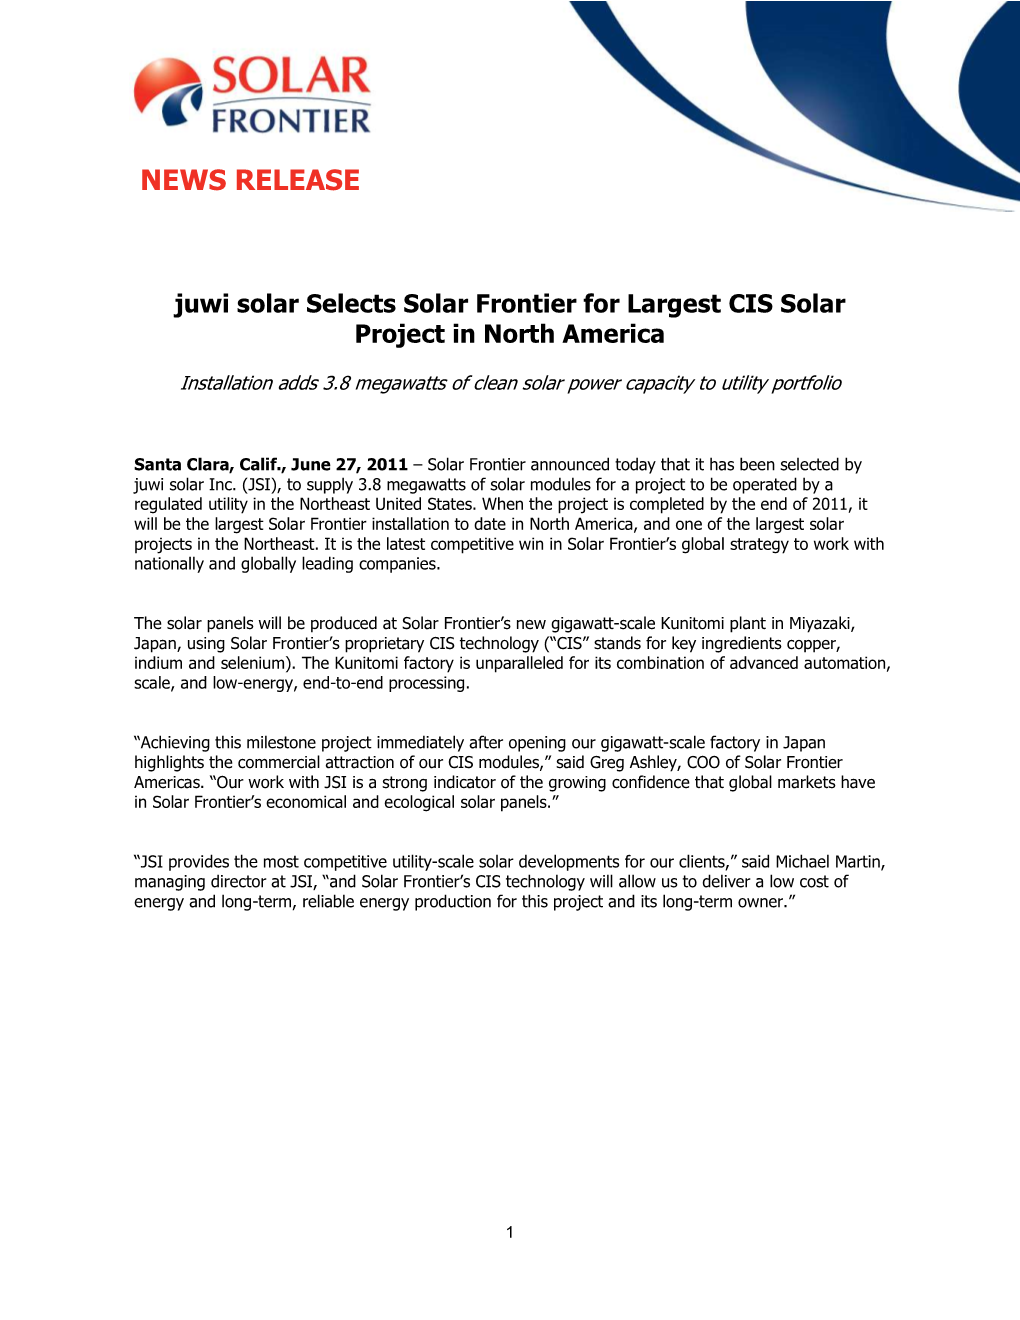 Solar Frontier Press Release Juwi Final